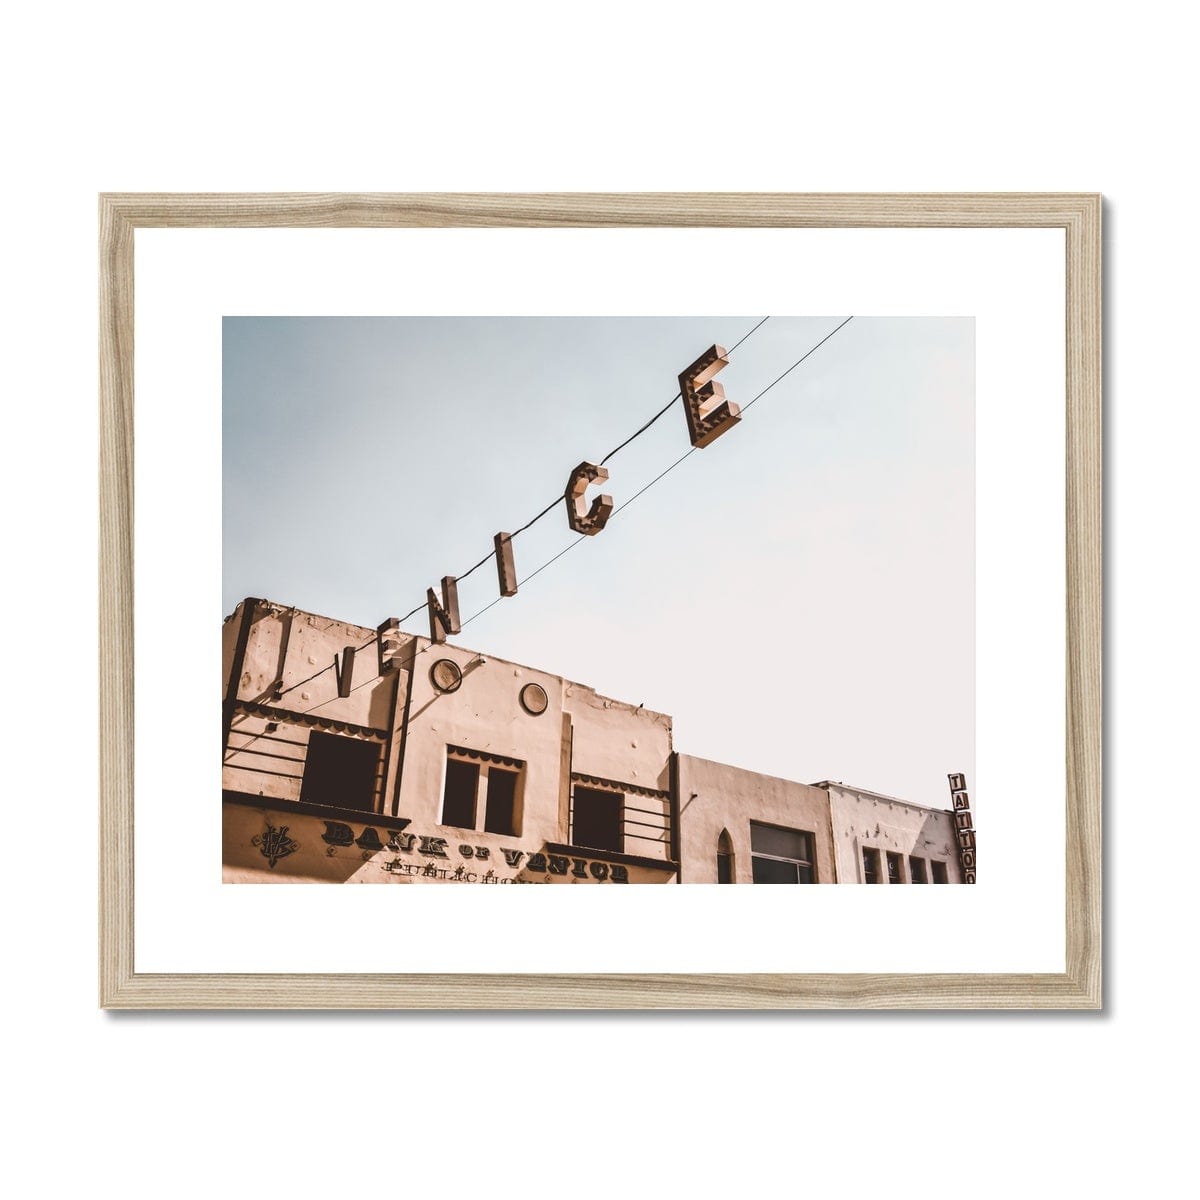 Seek & Ramble Framed A4 Landscape (29x21cm) / Natural Frame Venice Sign Overhead Framed & Mounted Print